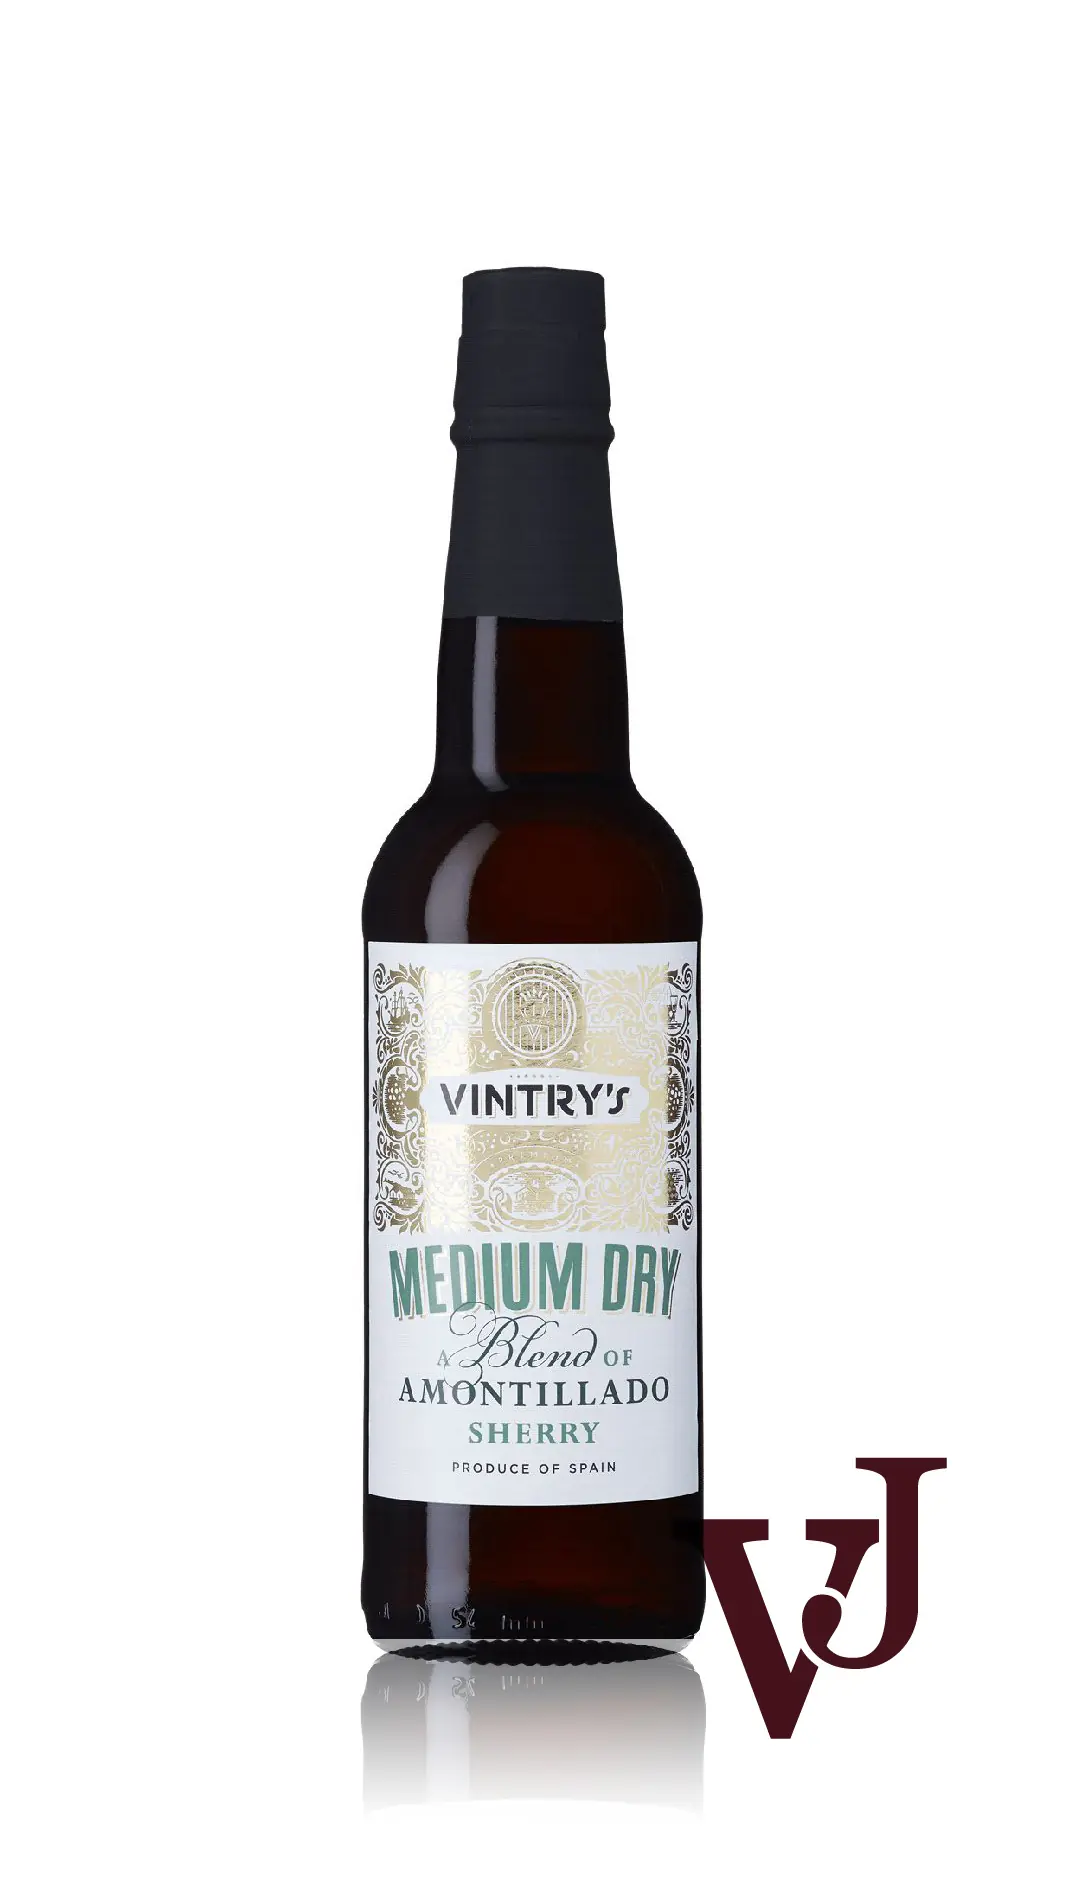 Övrigt vin - Vintry's Blend of Amontillado artikel nummer 824702 från producenten José Estevez från området Spanien - Vinjournalen.se